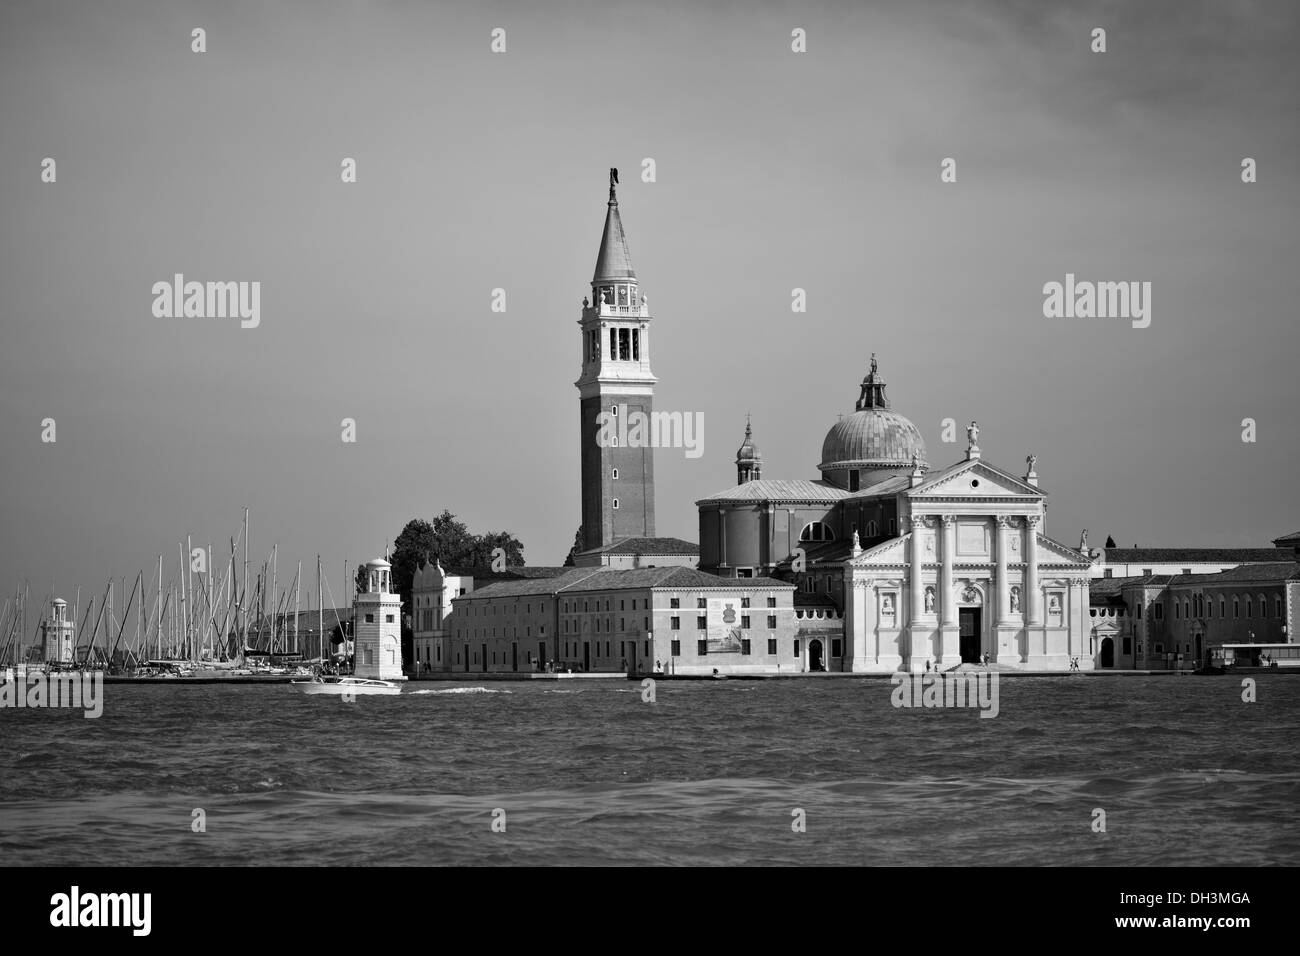 Vue de Venise, UNESCO World Heritage Site, image noir et blanc, Venise, Vénétie, Italie, Europe Banque D'Images